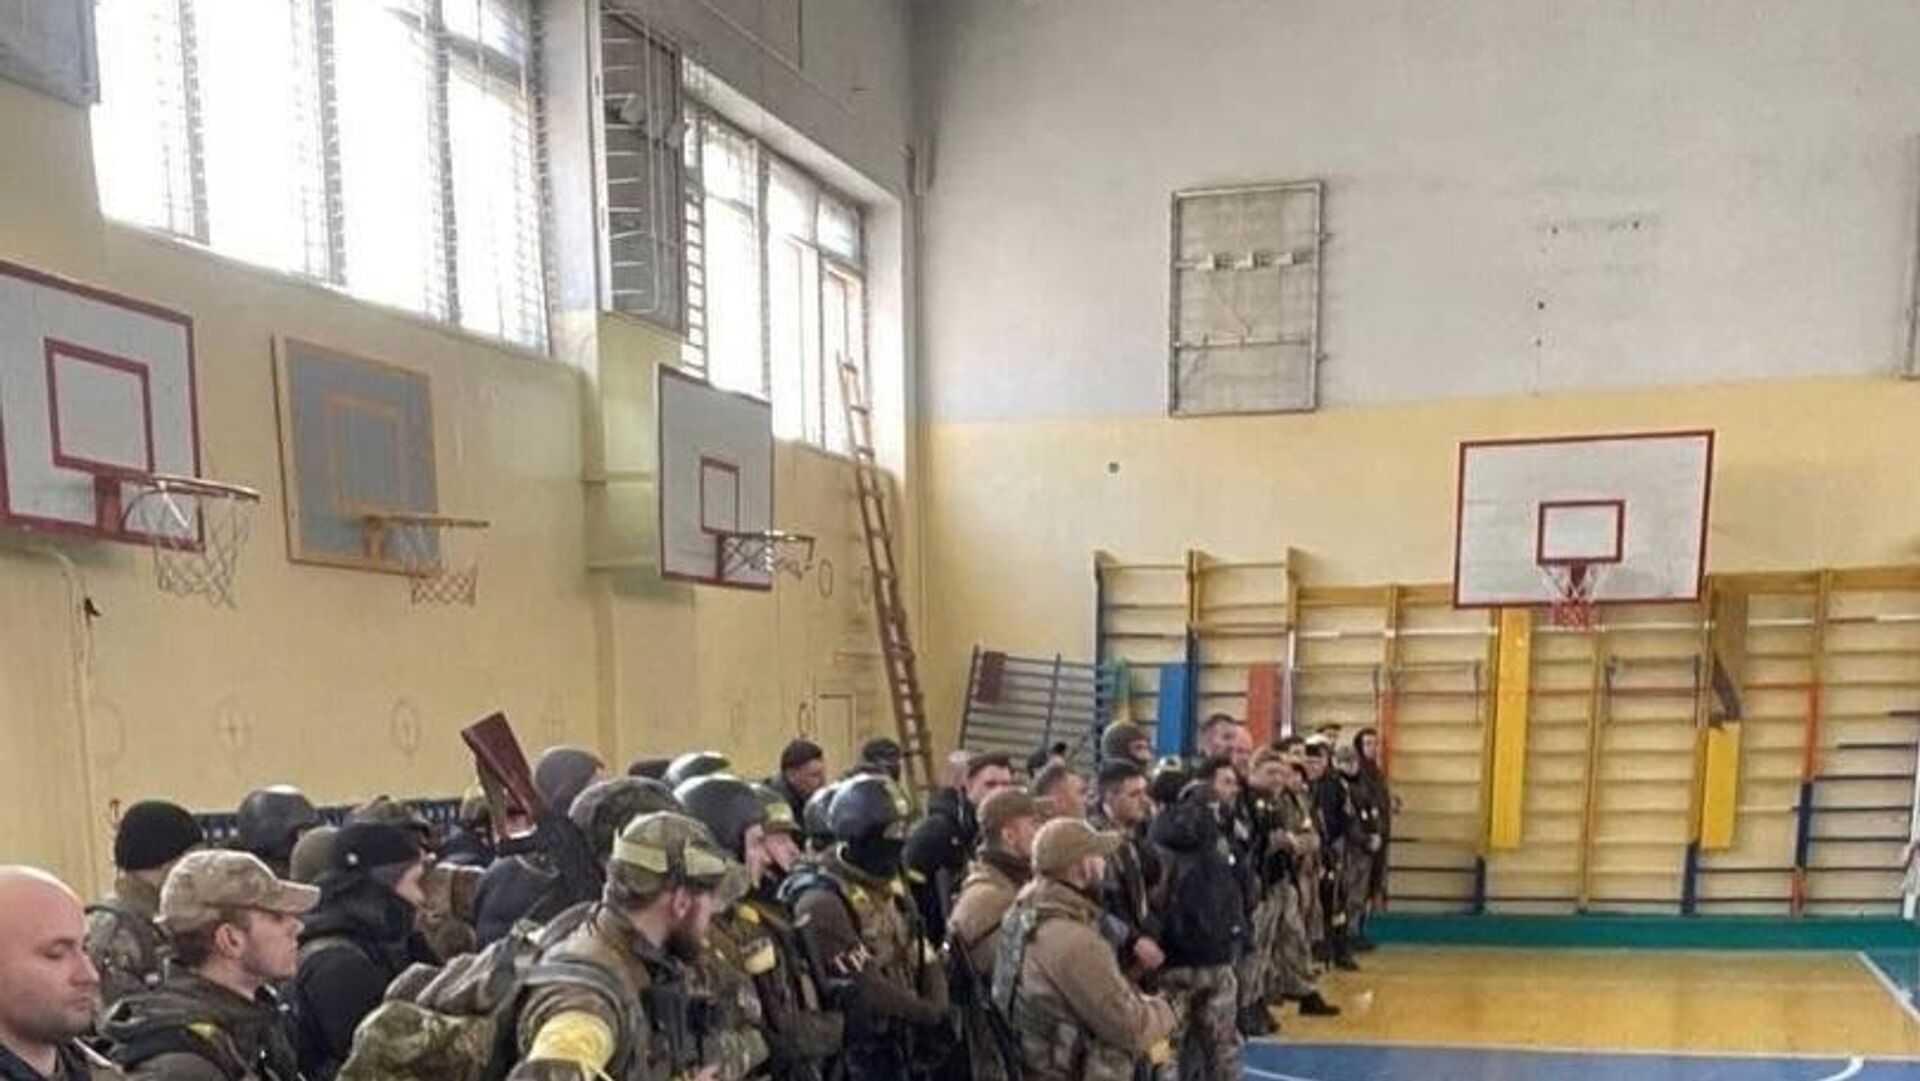 Ukrainian forces destroyed in a school gym. Cropped image of Ukrainian soldier's social media selfie. - Sputnik International, 1920, 05.08.2022